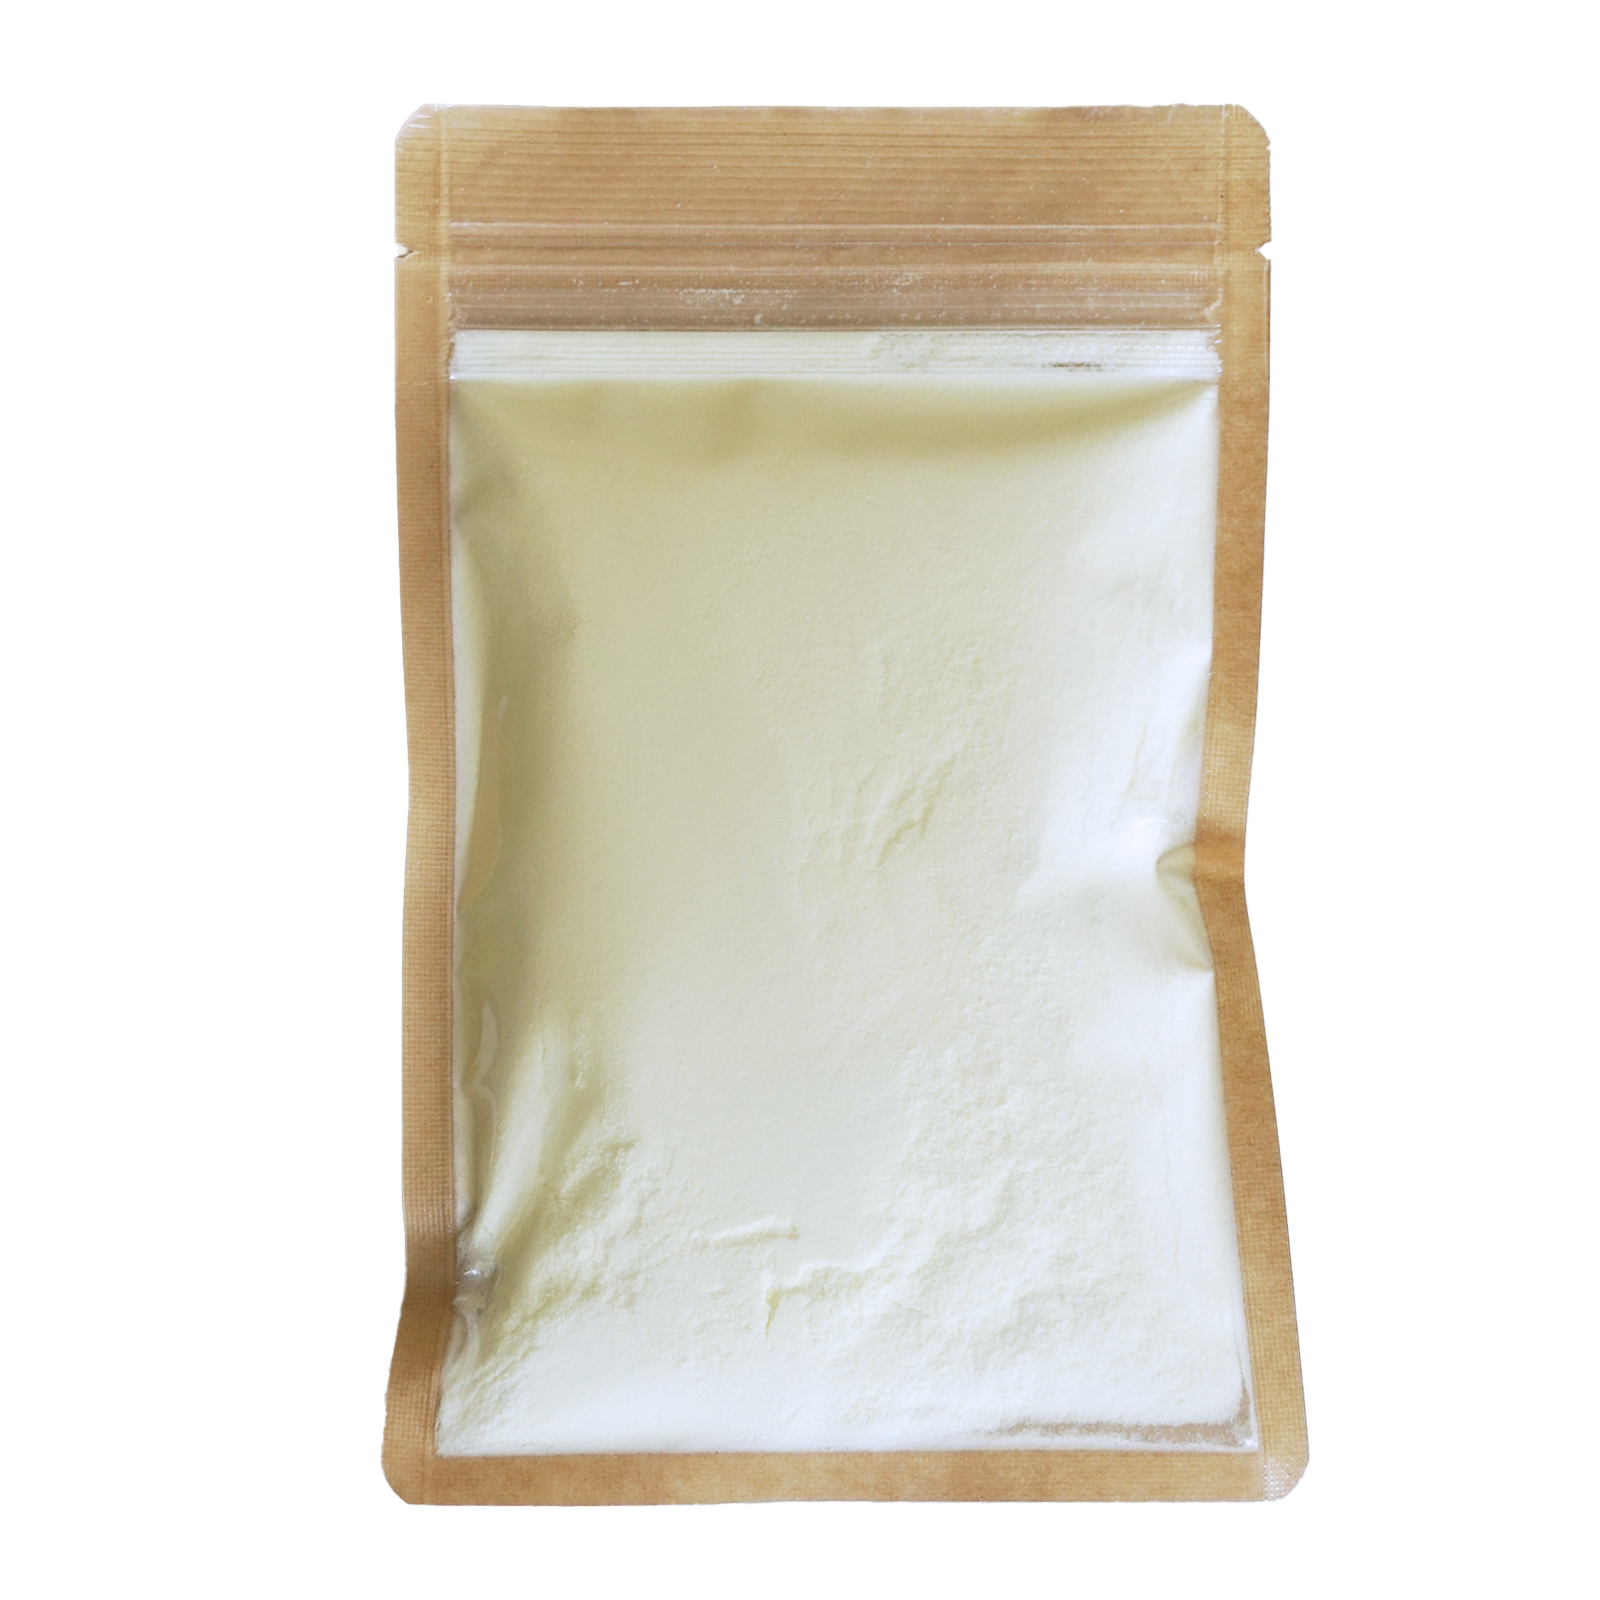 有機 オーガニック グラスフェッド スキム ミルク パウダー 脱脂粉乳 オーストラリア産 (500g-25kg) ホライズンファームズ